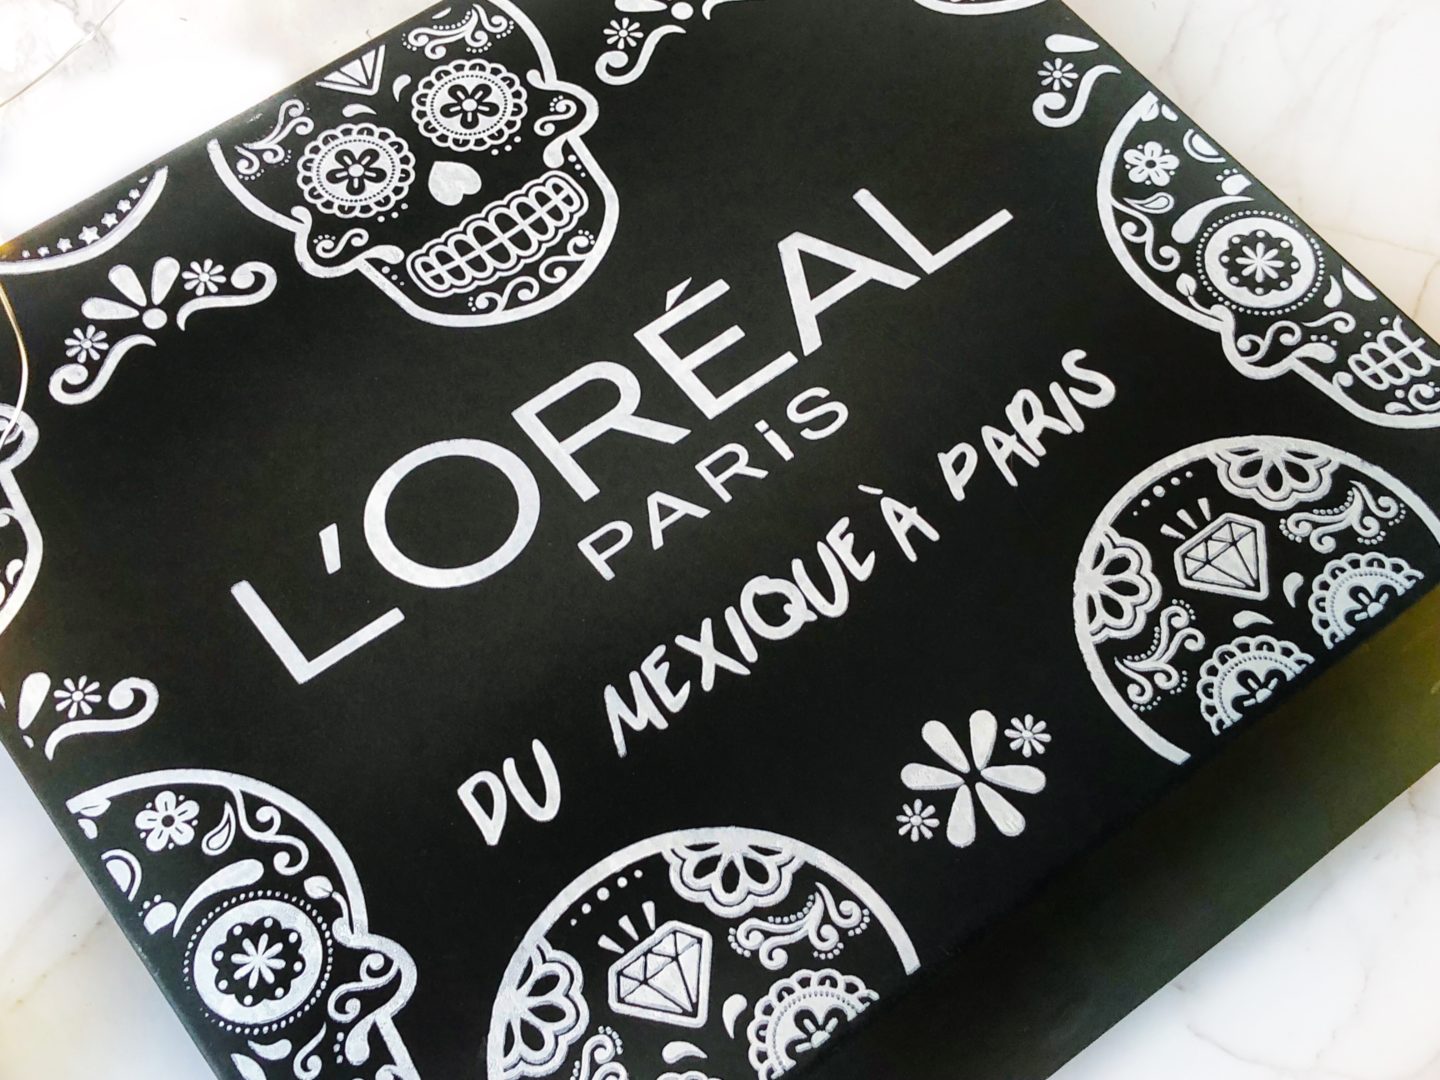 Una de mis marcas favoritas low-cost es L’Oreal, porque tiene productos increíbles a precios muy accesibles. Se trata de una empresa francesa que cuenta con con su sede en Paris. 